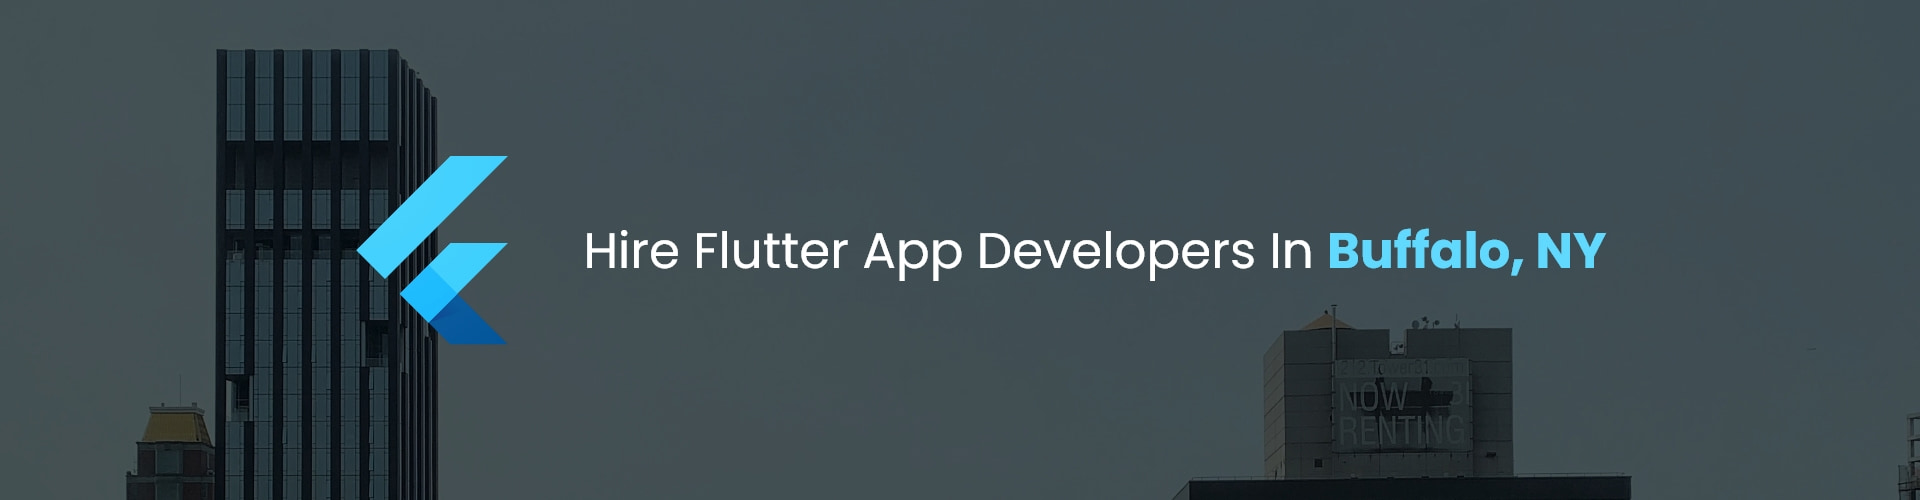 hire flutter app developers in buffalo